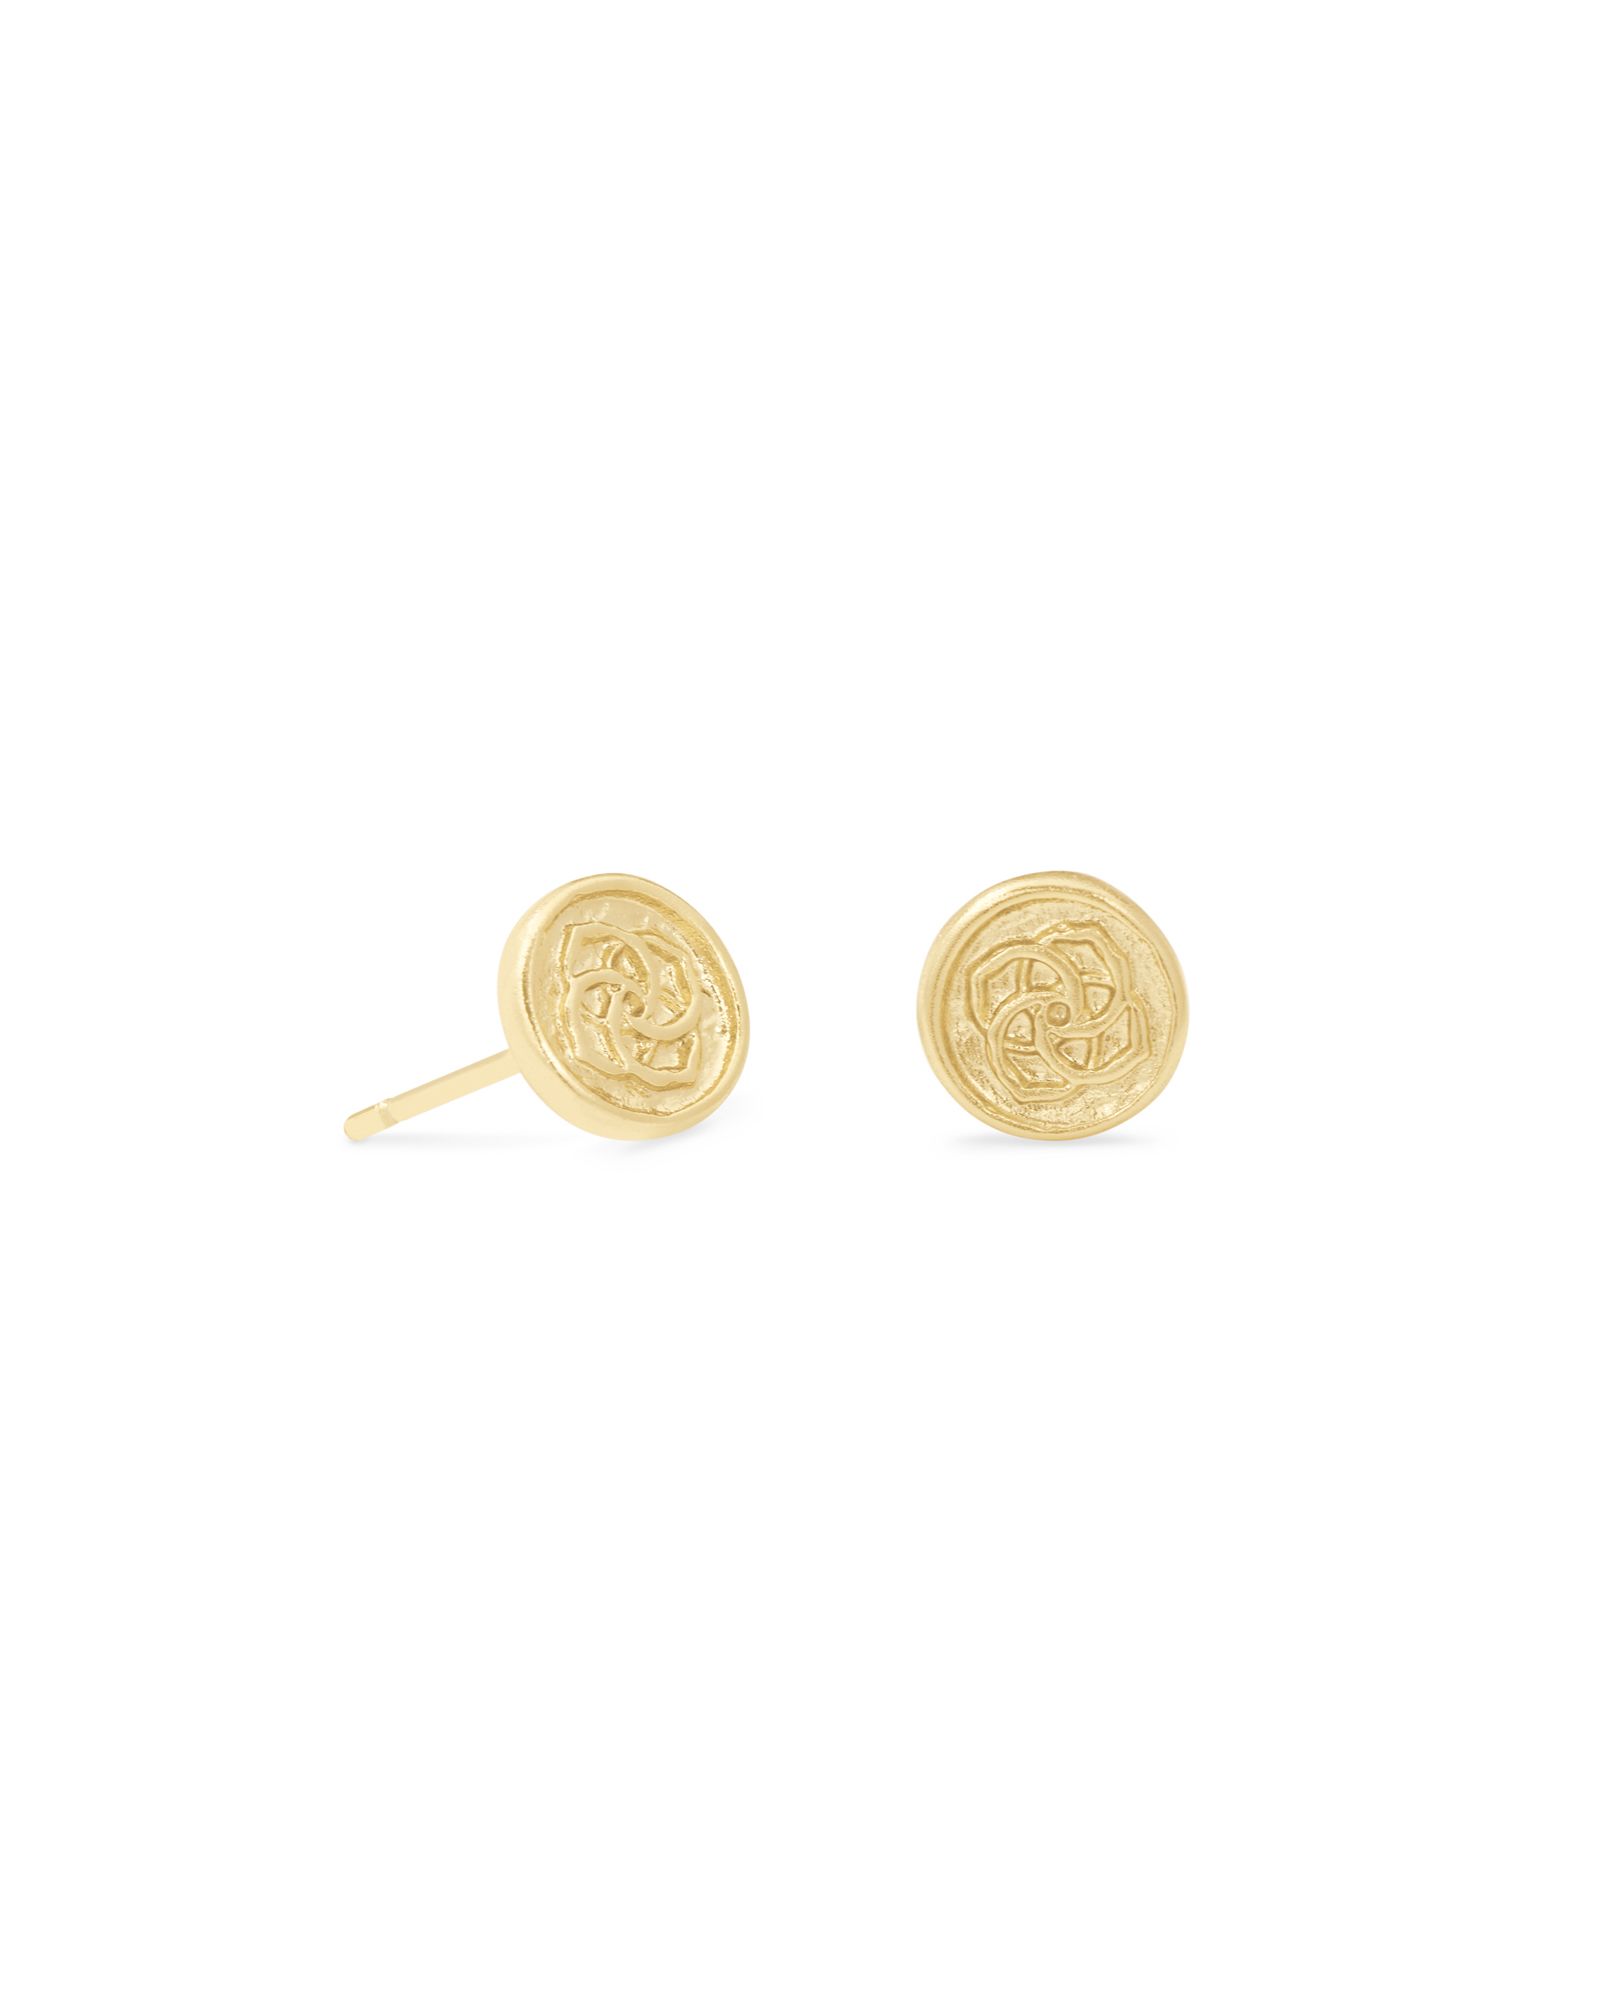 Dira Coin Stud Earrings in Gold | Kendra Scott | Kendra Scott